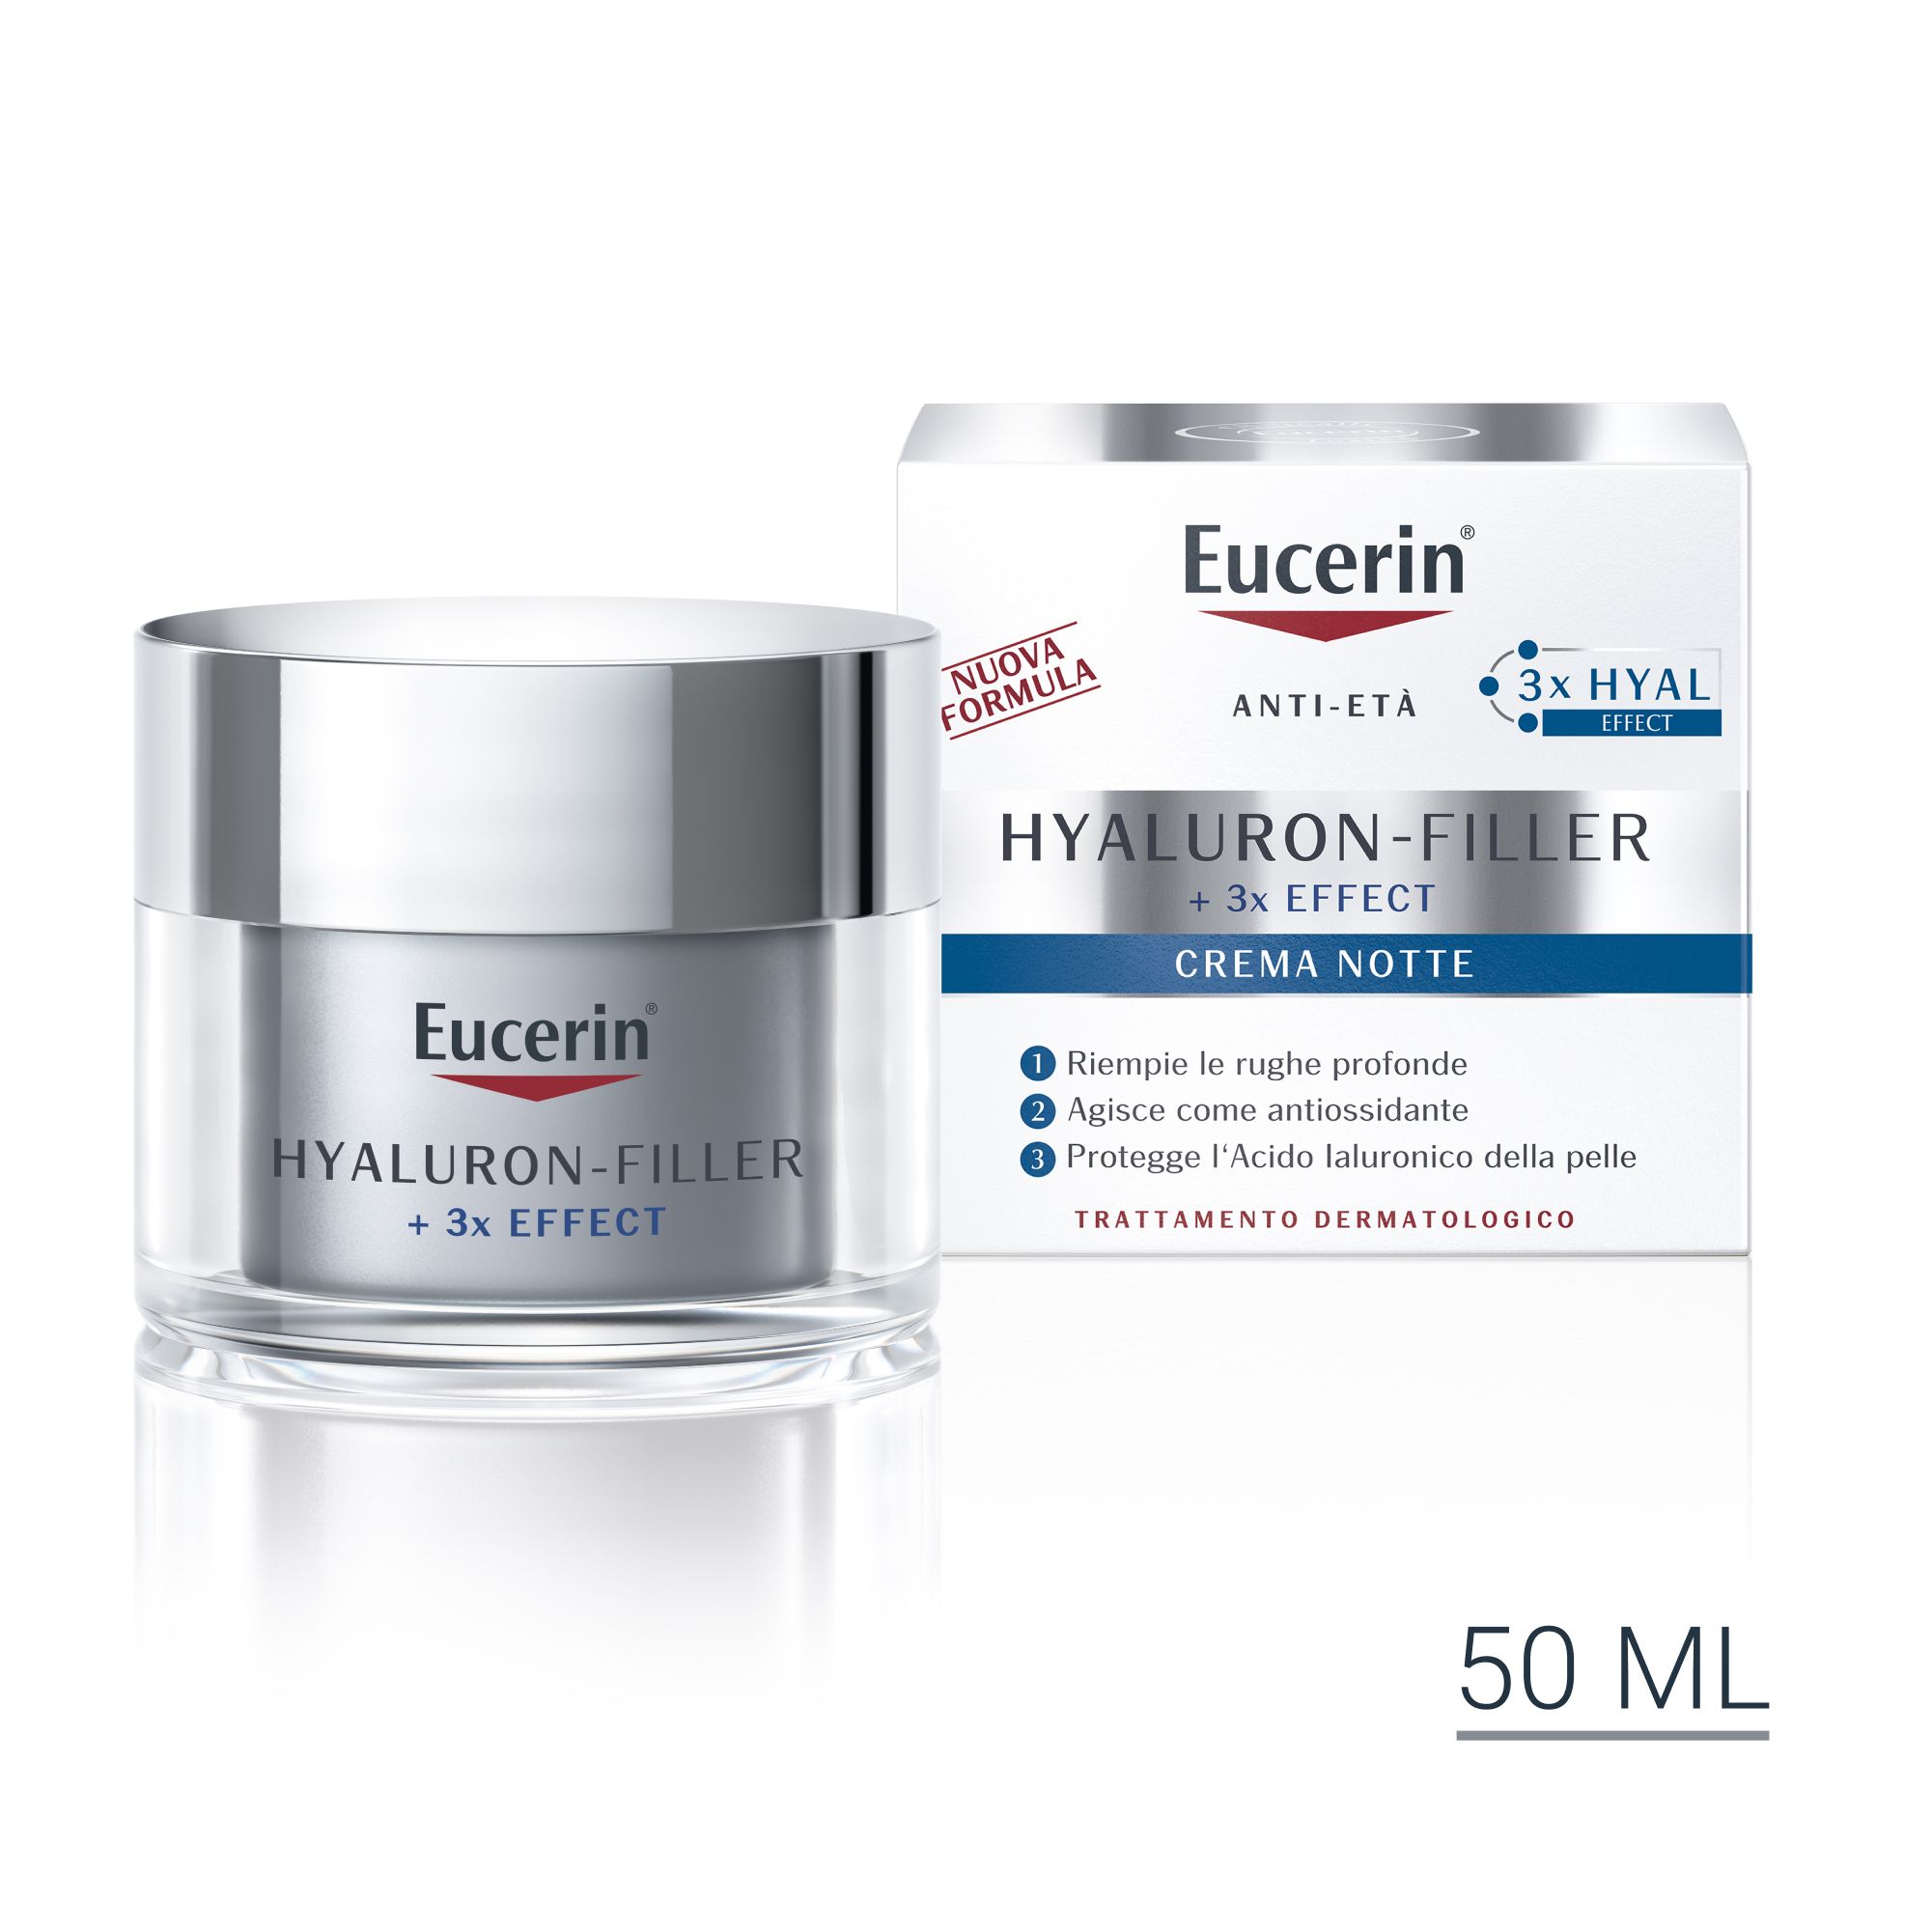 Image of Eucerin Hyaluron-Filler Crema Notte 50 ml